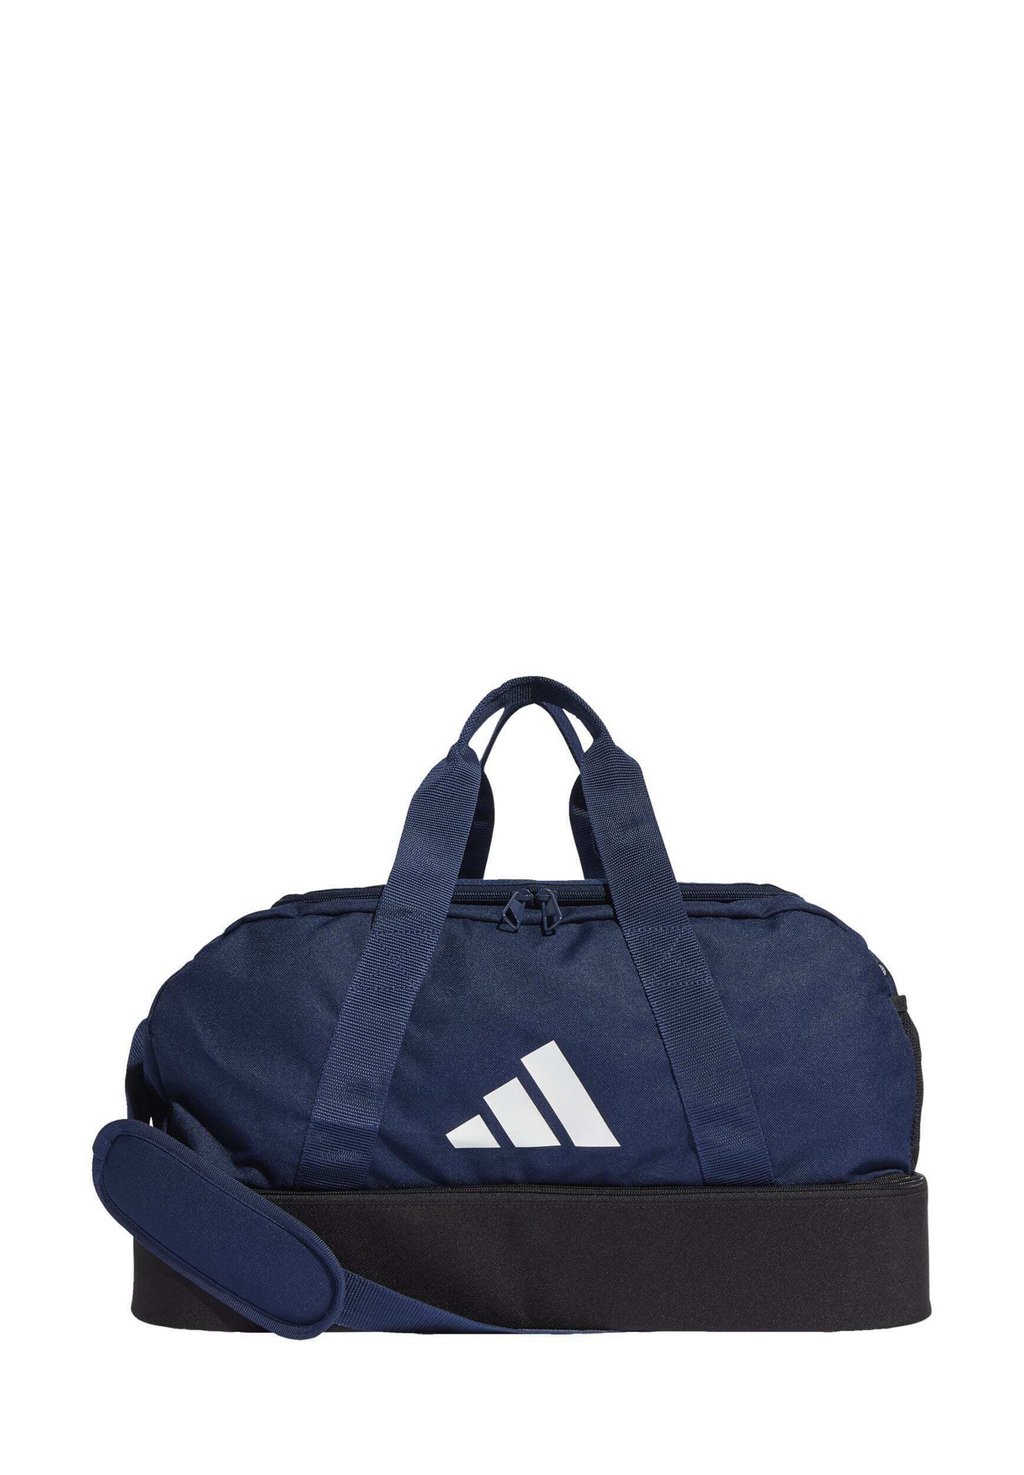 Спортивная сумка Tiro League Du S Bc Adidas, цвет team navy blue black white